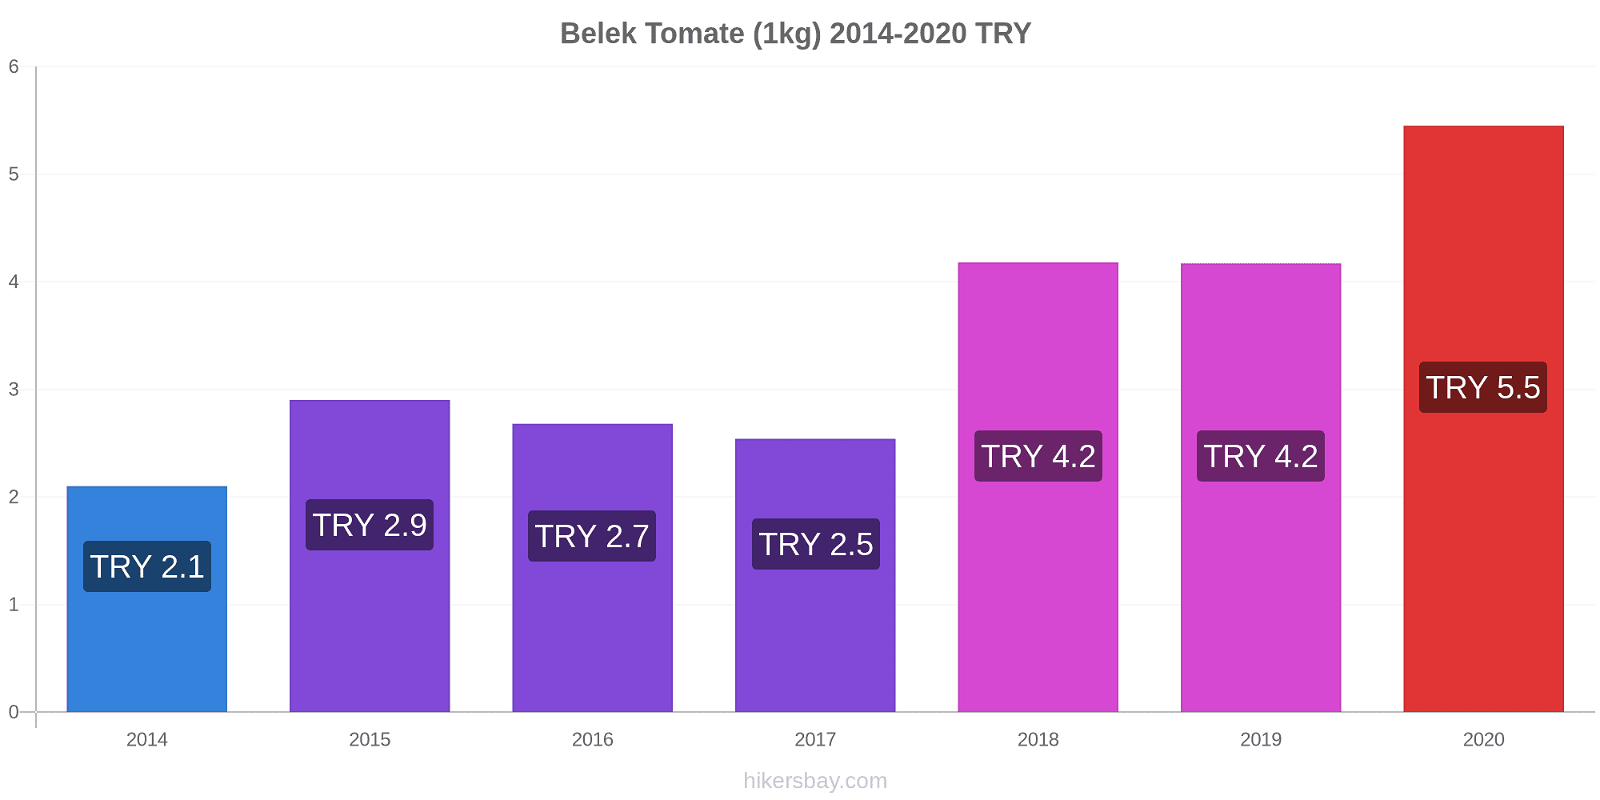 Belek cambios de precios Tomate (1kg) hikersbay.com